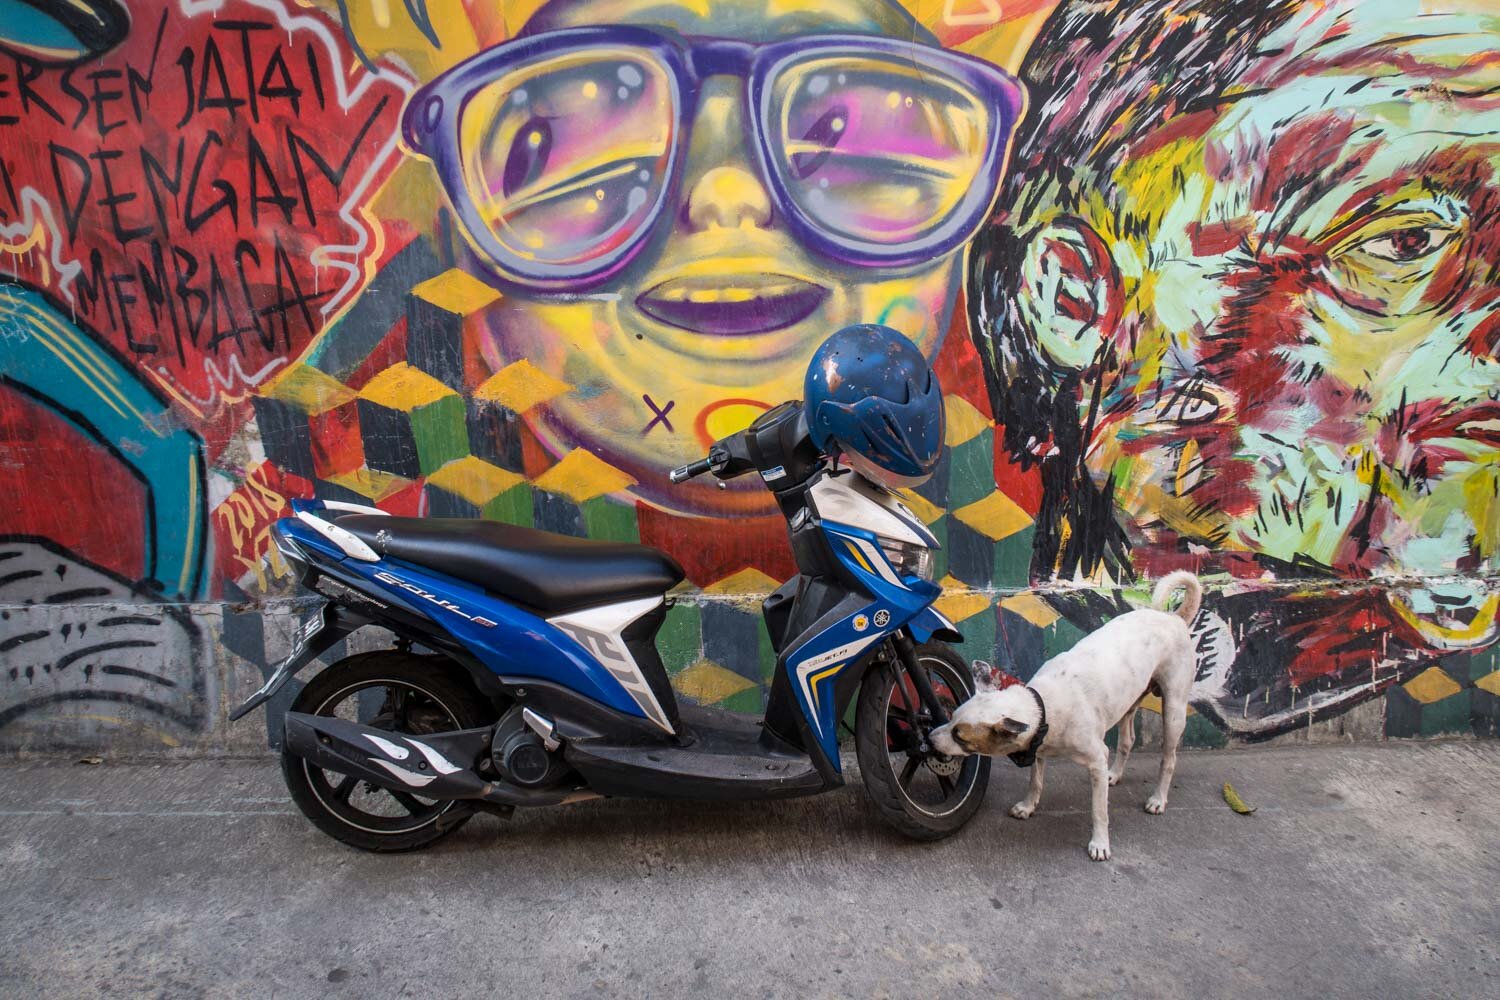 Motorbike in Yogyakarta and dog